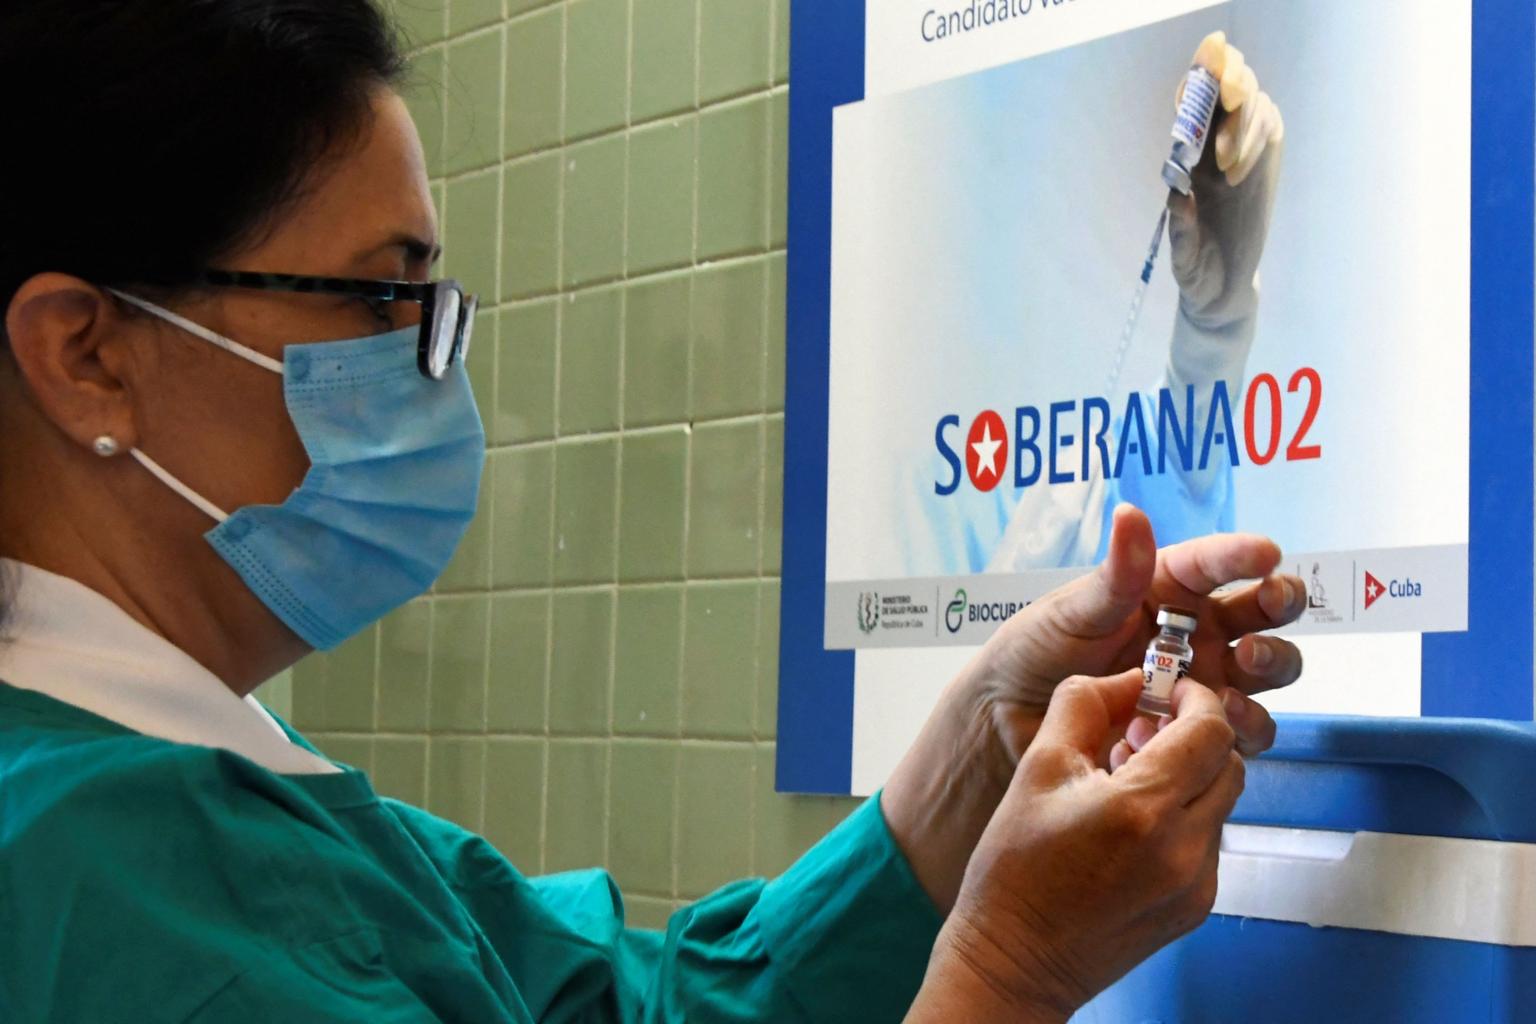 Cuba's second Covid 19 vaccine Soberana 2 boasts 91.2 efficacy